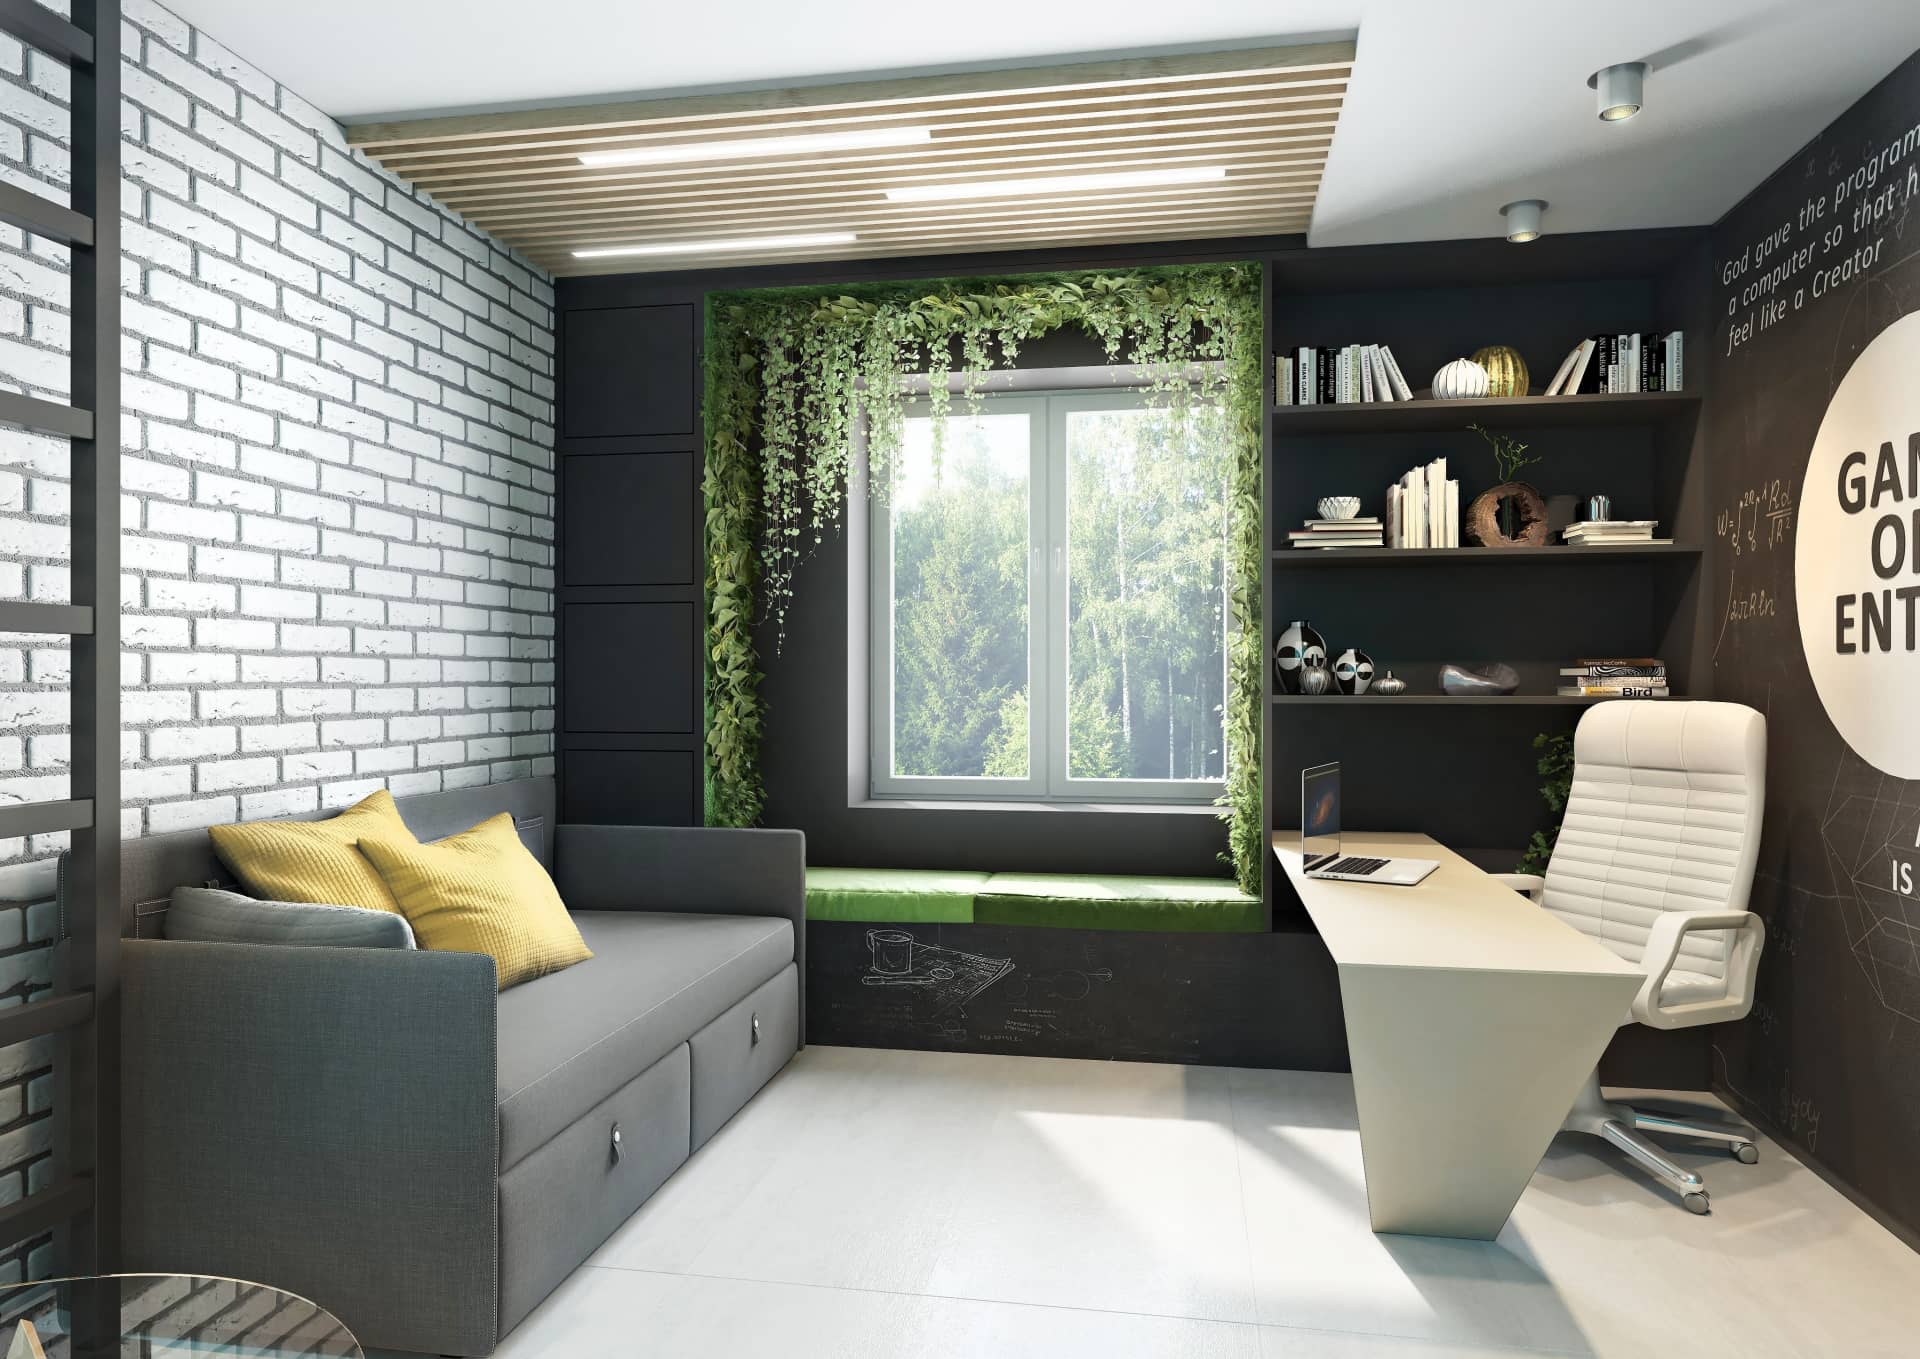 Ниша-балкончик с искусственной зеленью для создания уюта в кабинете